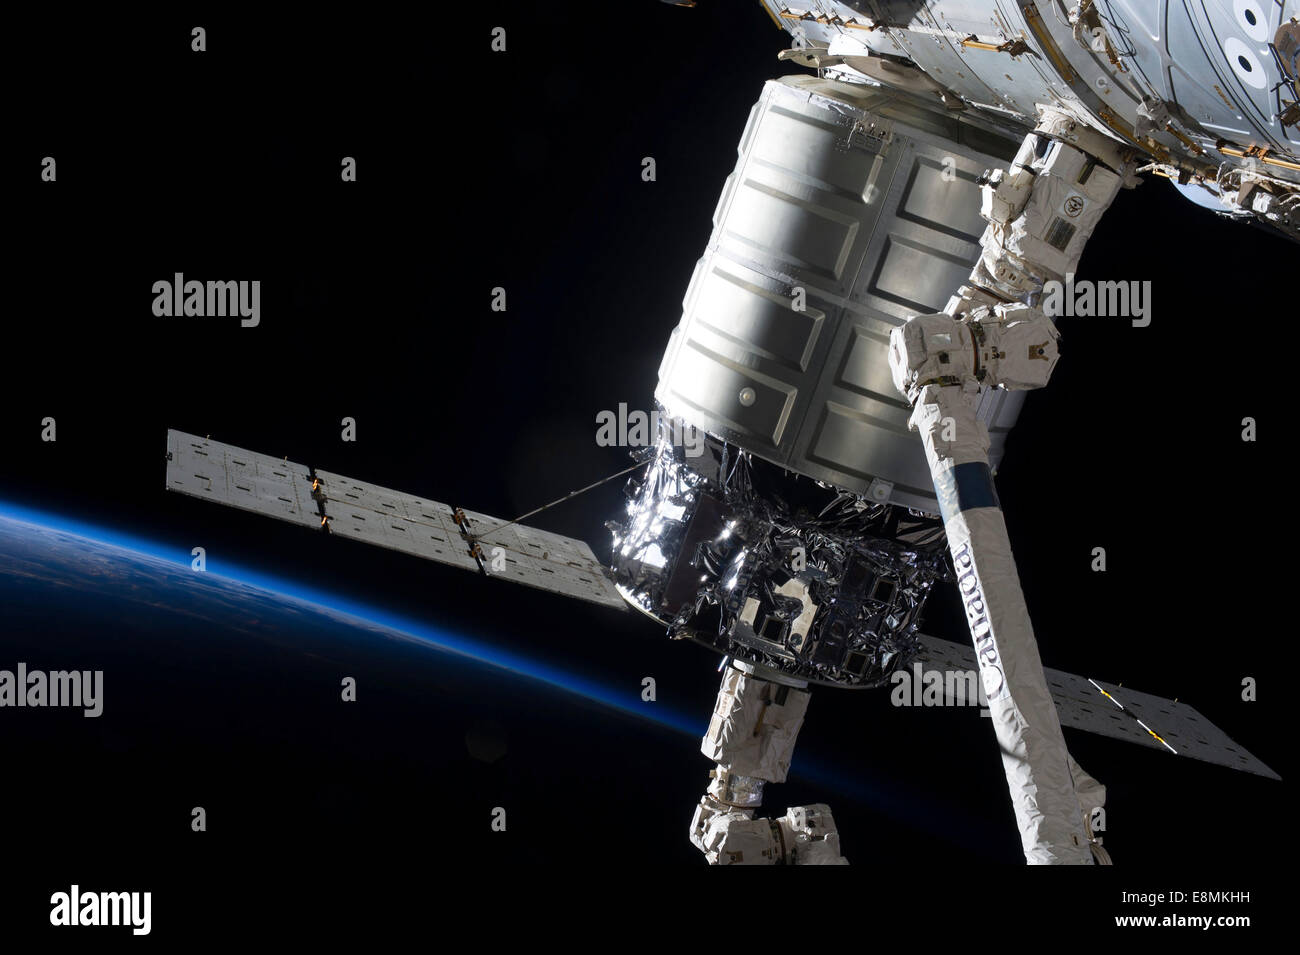 5 Ottobre 2013 - collegato al nodo di armonia, il primo Cygnus commerciale cargo veicolo spaziale nell'afferrare del Canadarm2. Il Foto Stock